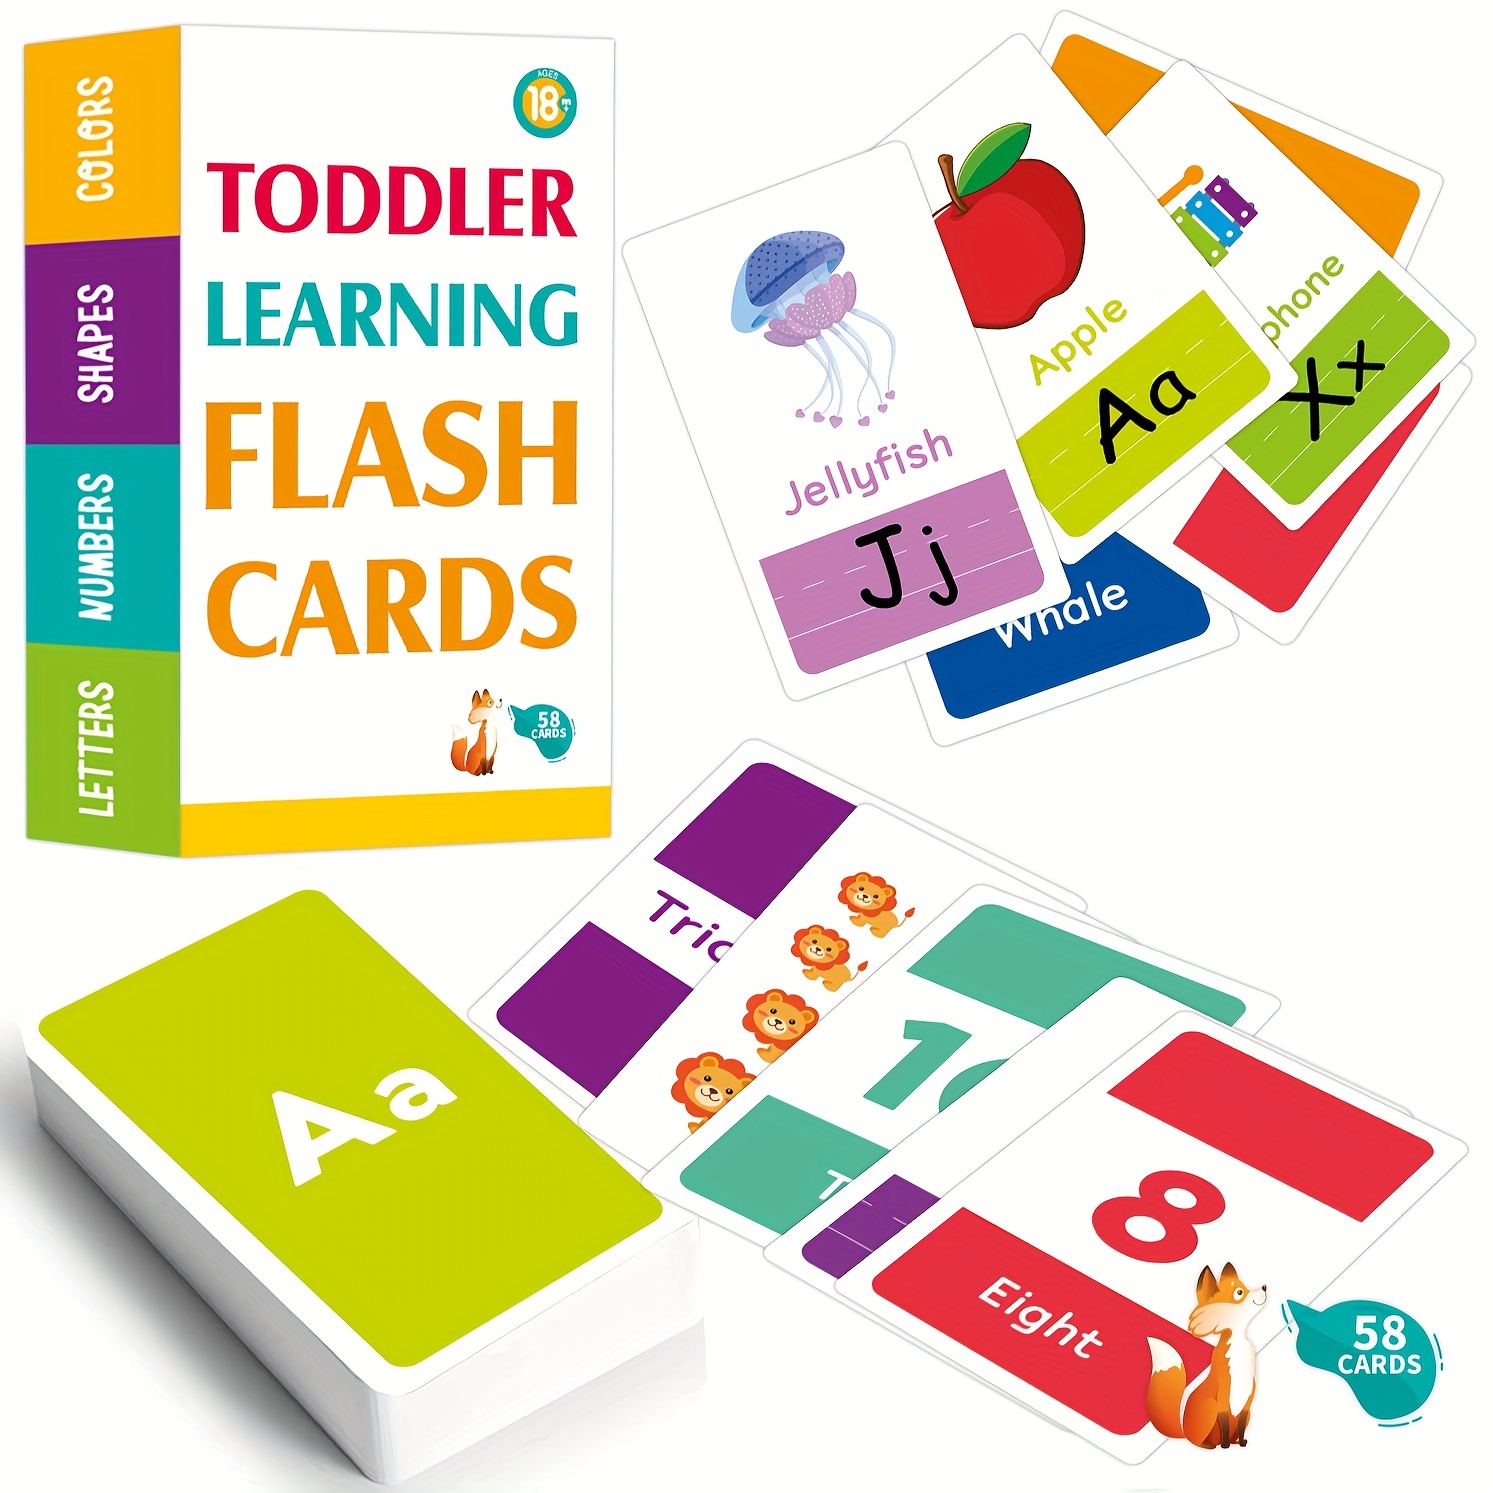 Machine à cartes Flash pour l'éducation de la petite enfance pour